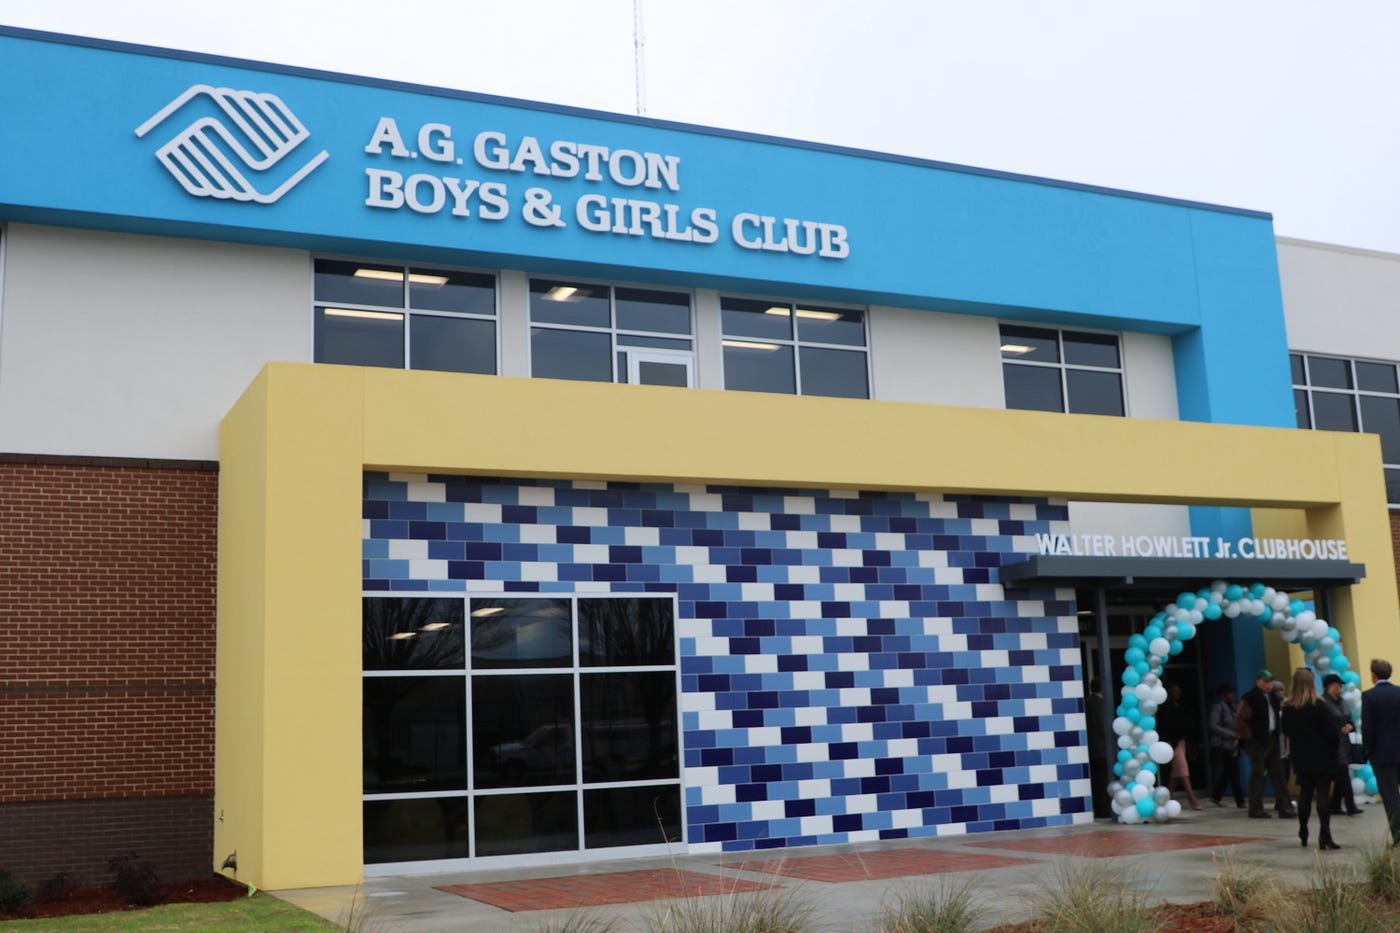 A.G. Gaston Boys & Girls Club logo